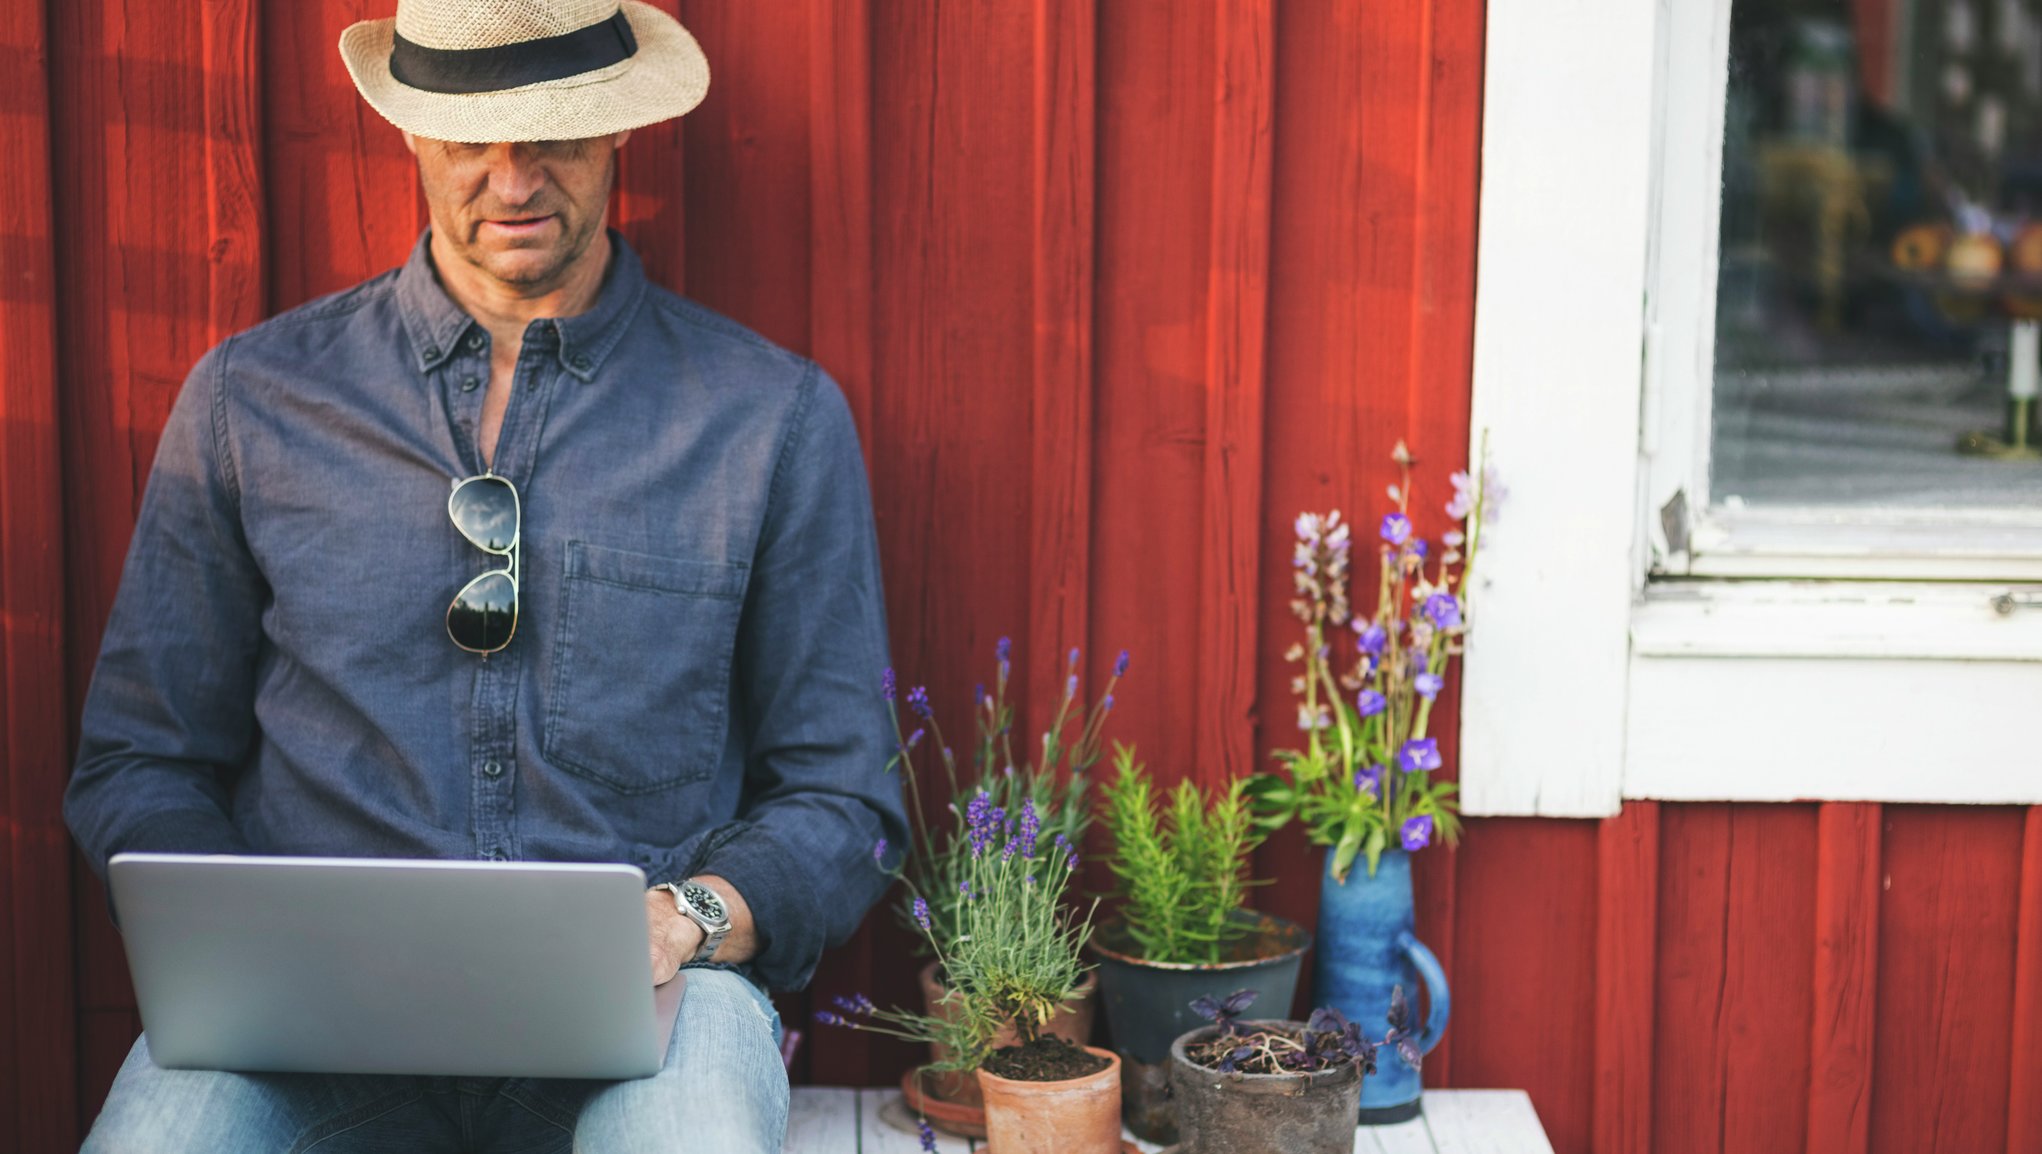 Människa i hatt och med laptop i knäet framför en stuga